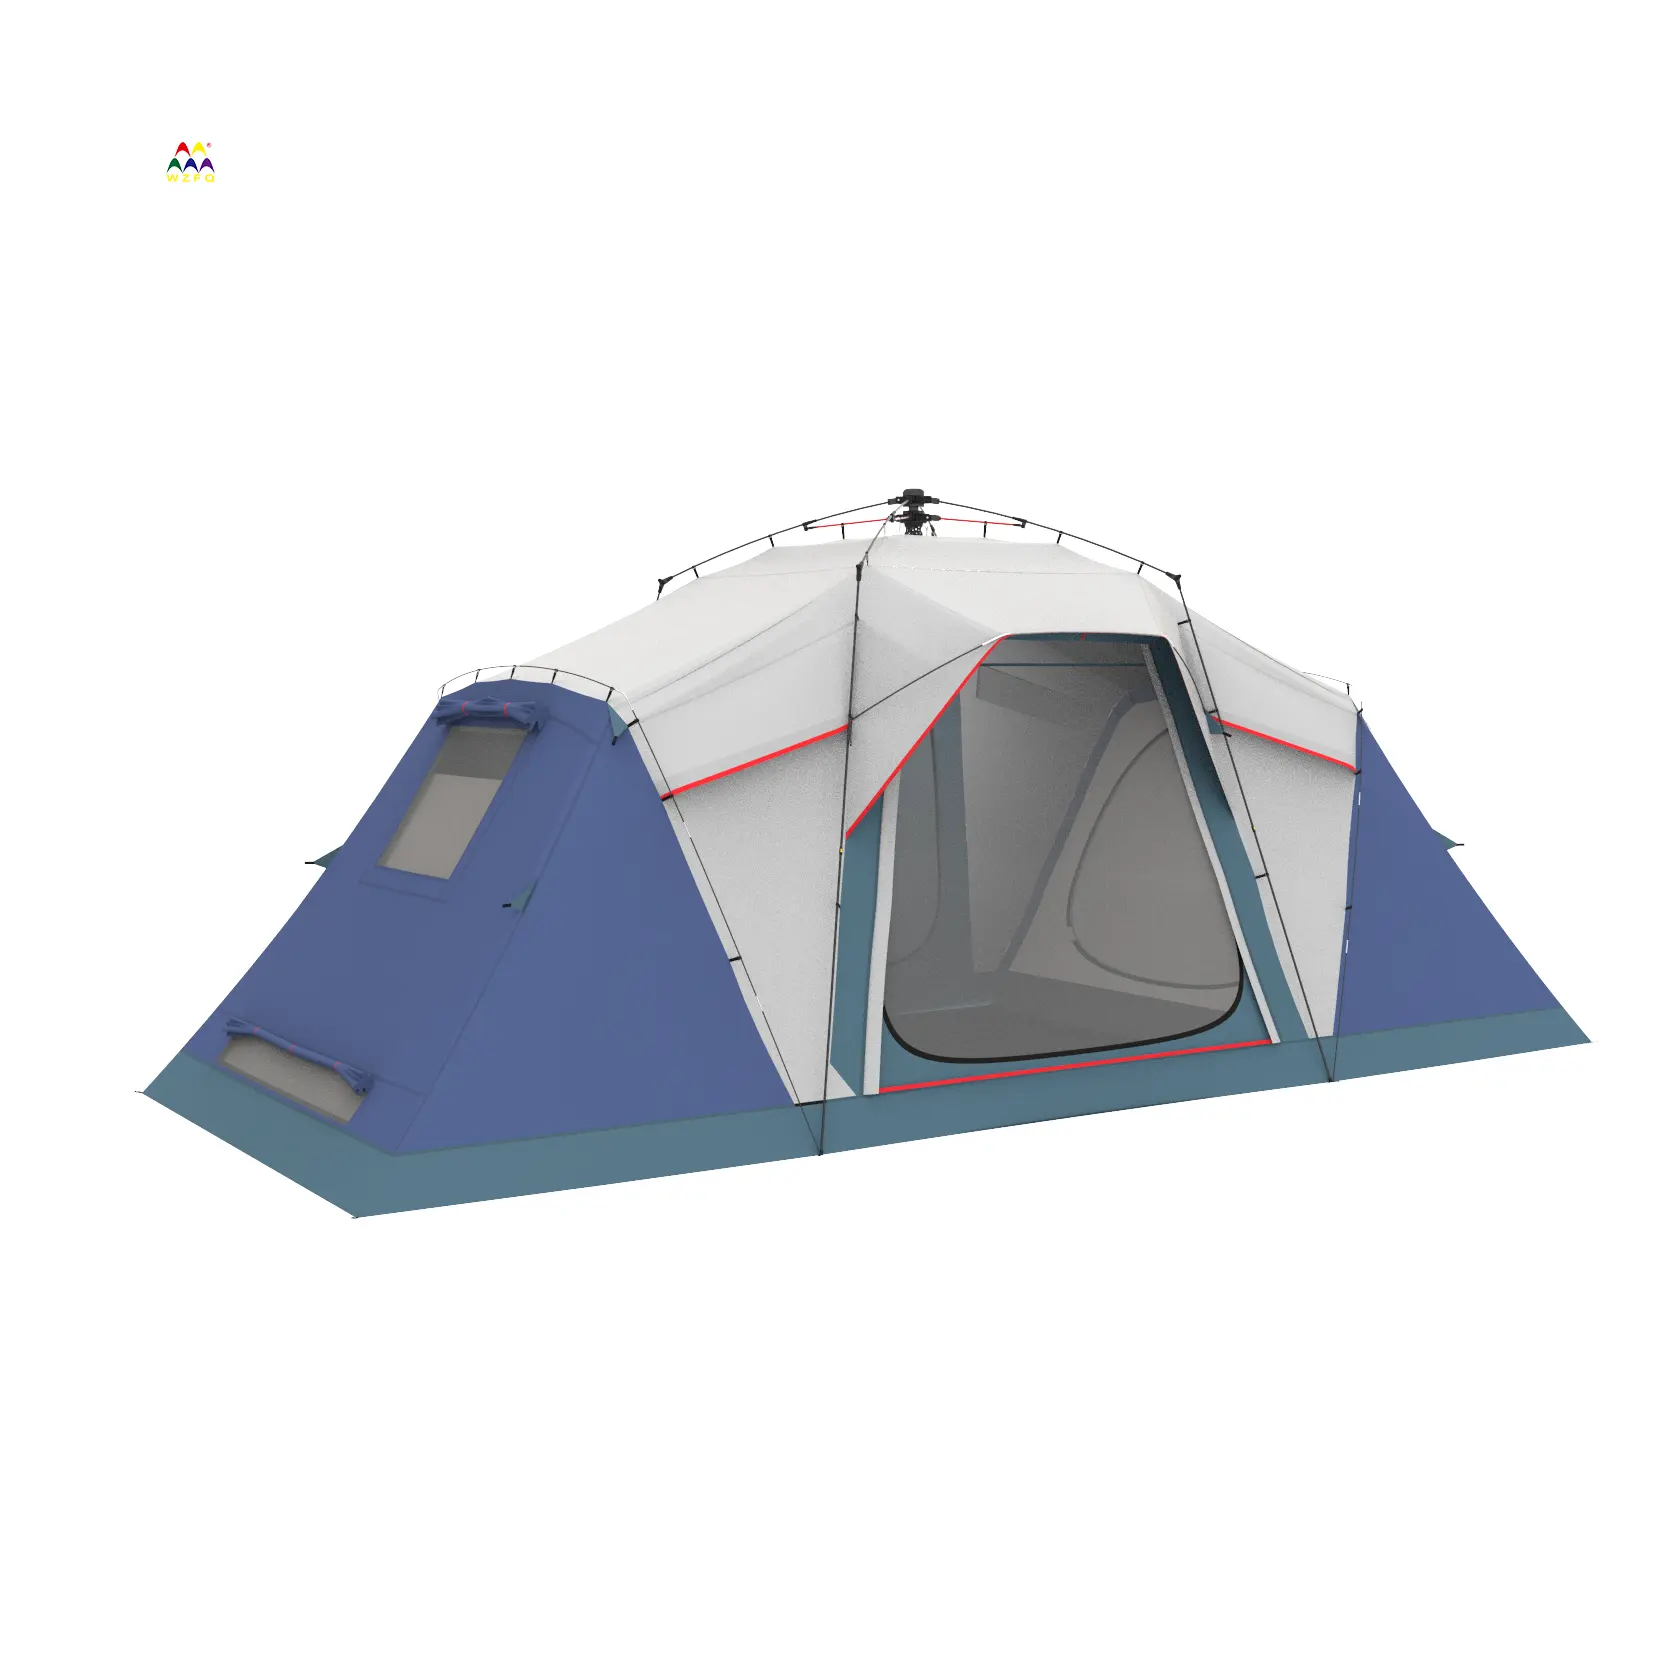 WZFQ Nylon ultraleggero impermeabile 2 persone tenda da Trekking palo per campeggio escursionismo Trekking zaino in spalla uomo tessuto stile superiore